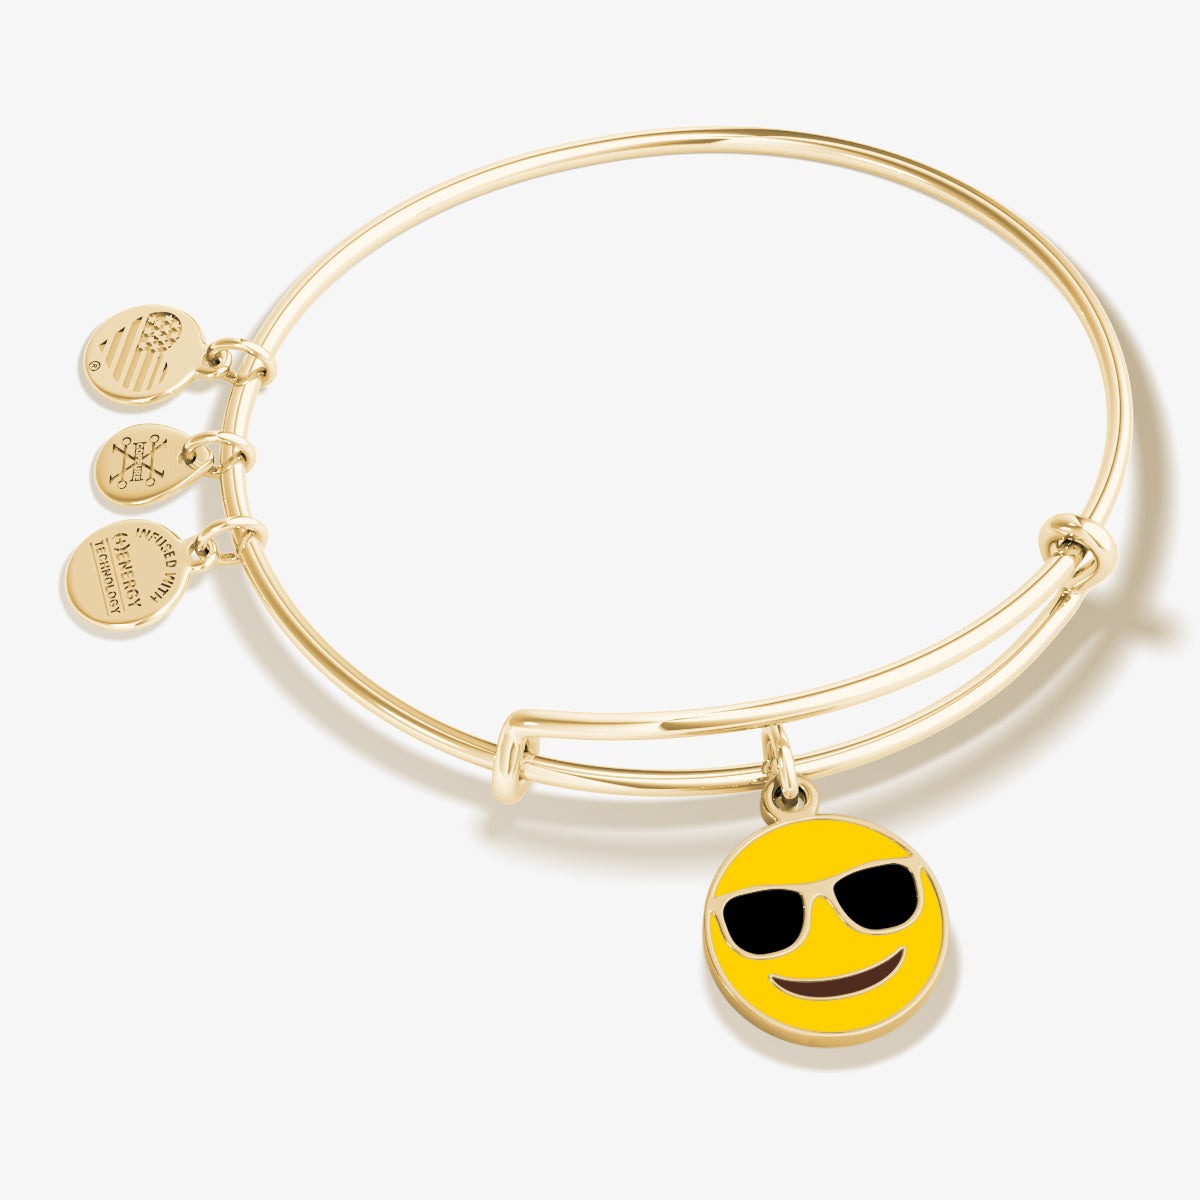 Sunglasses Emoji Charm Bangle Bracelet